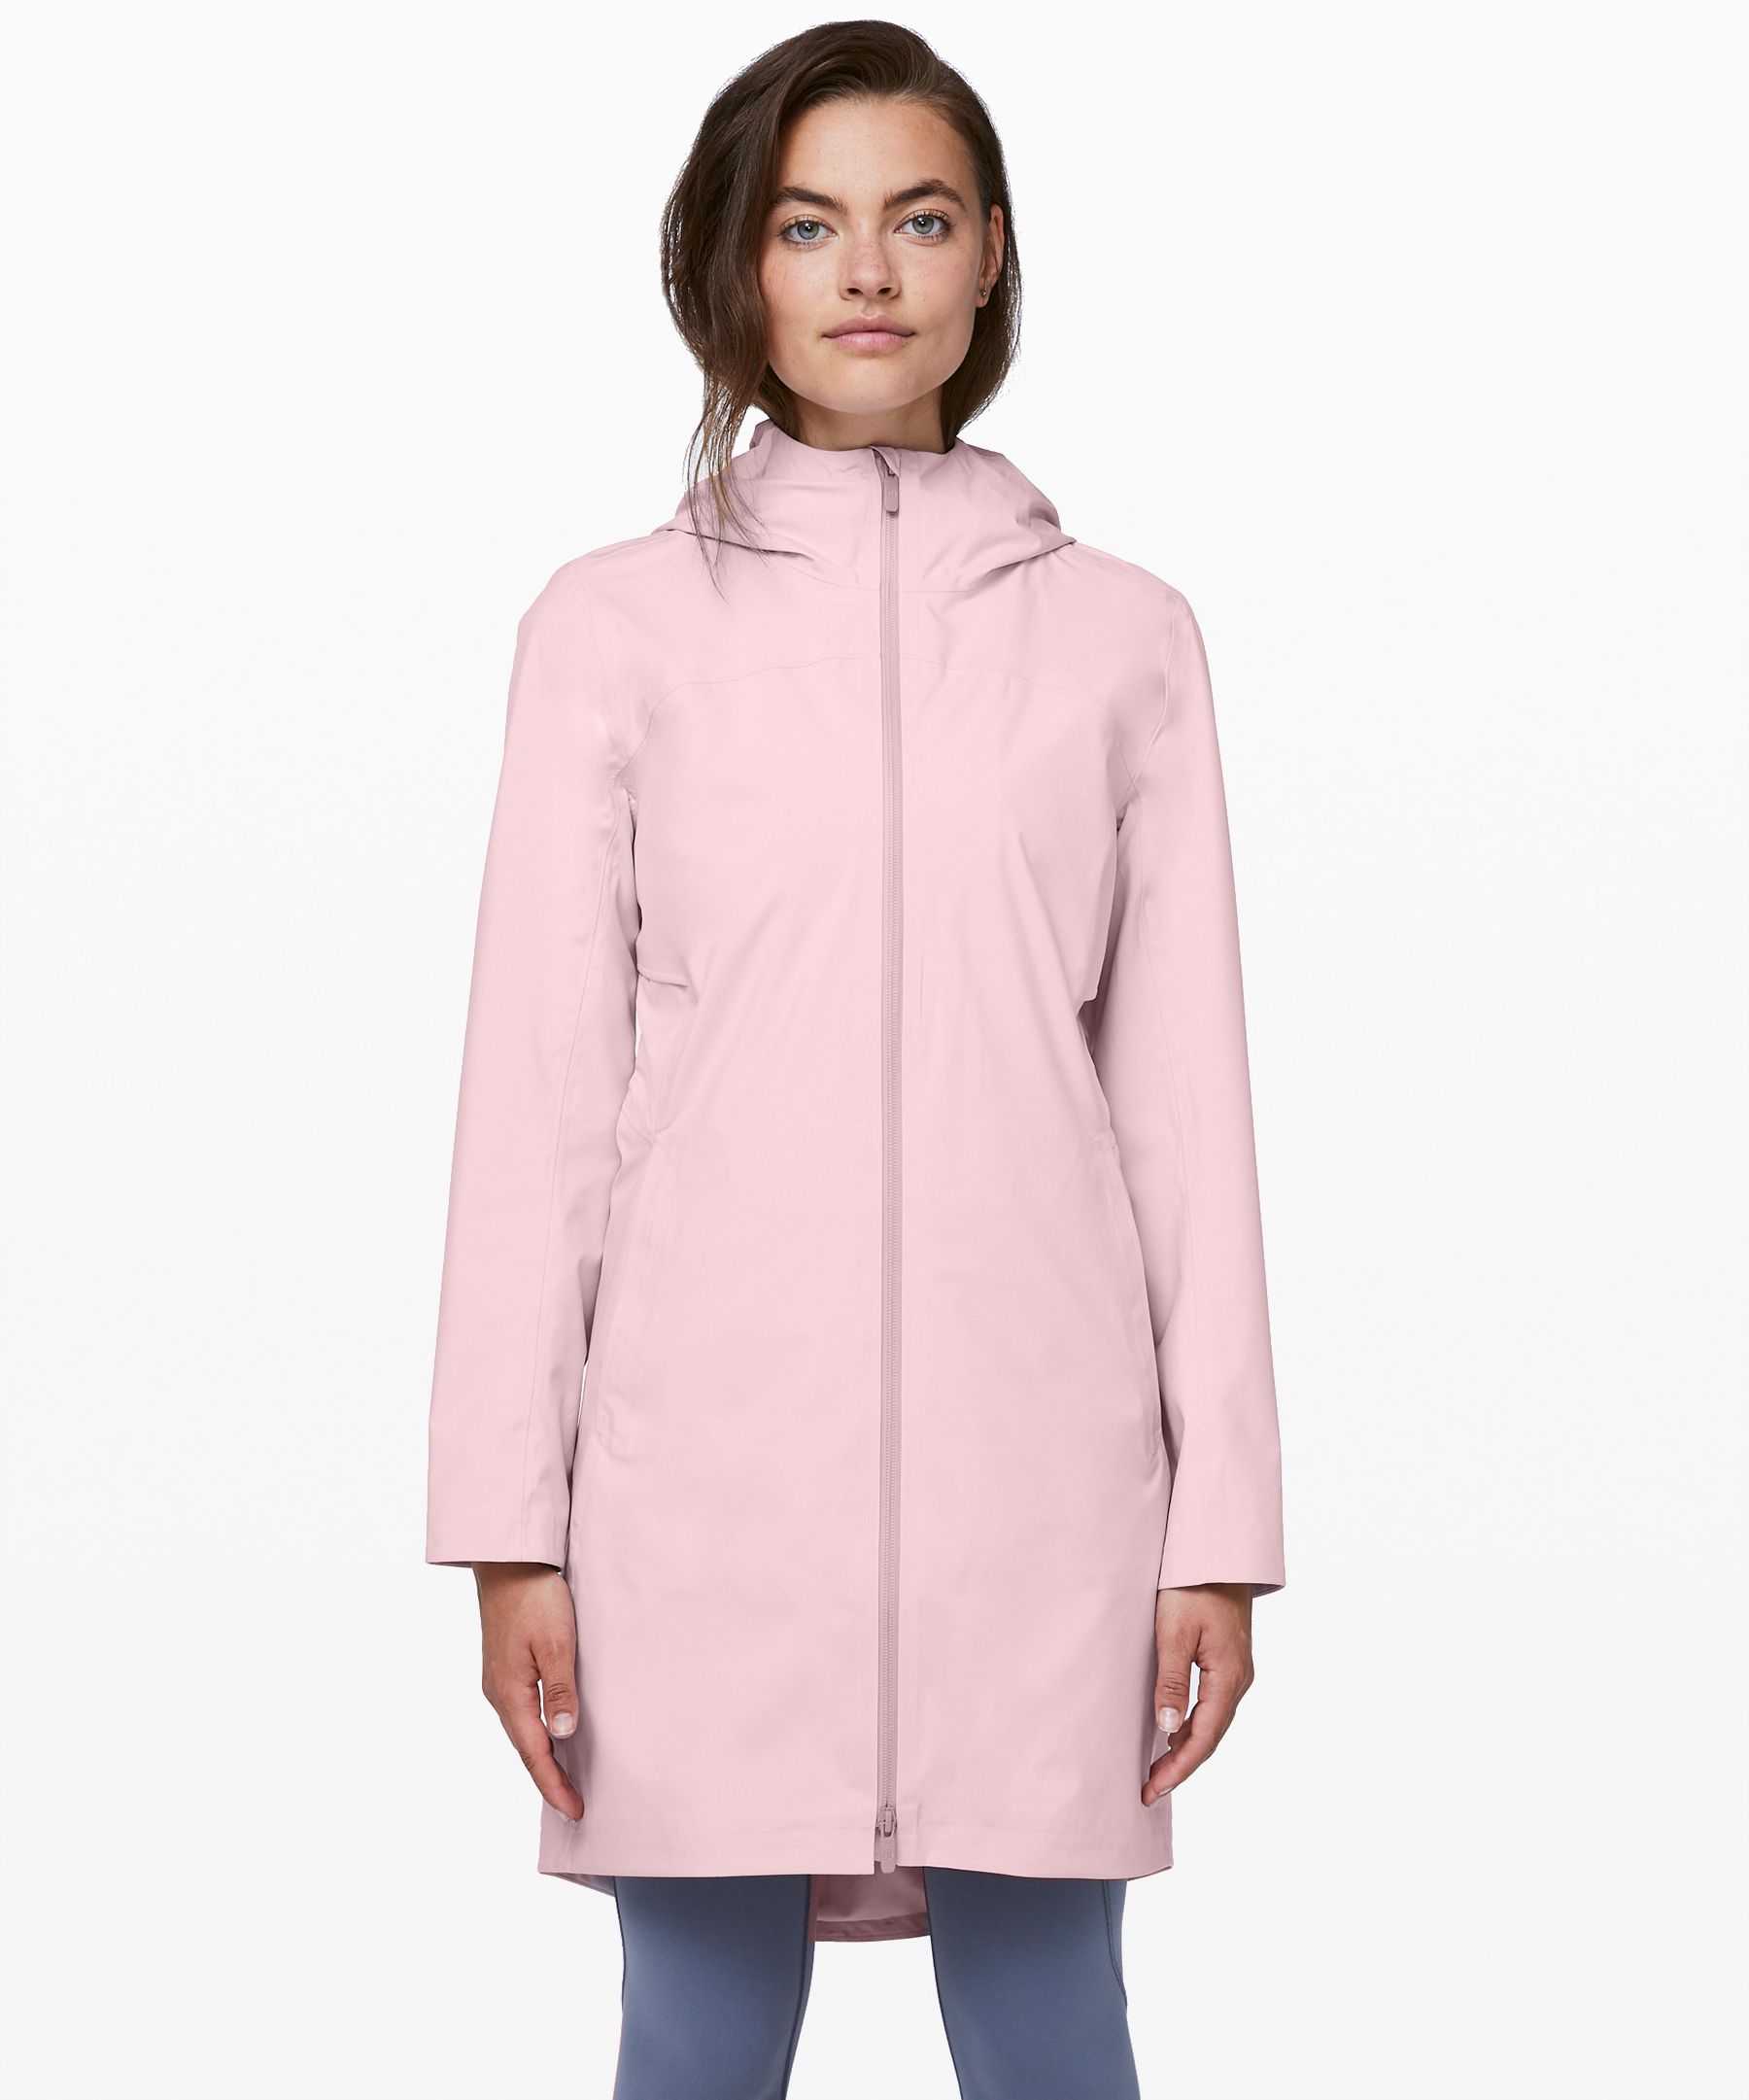 lululemon packable rain jacket